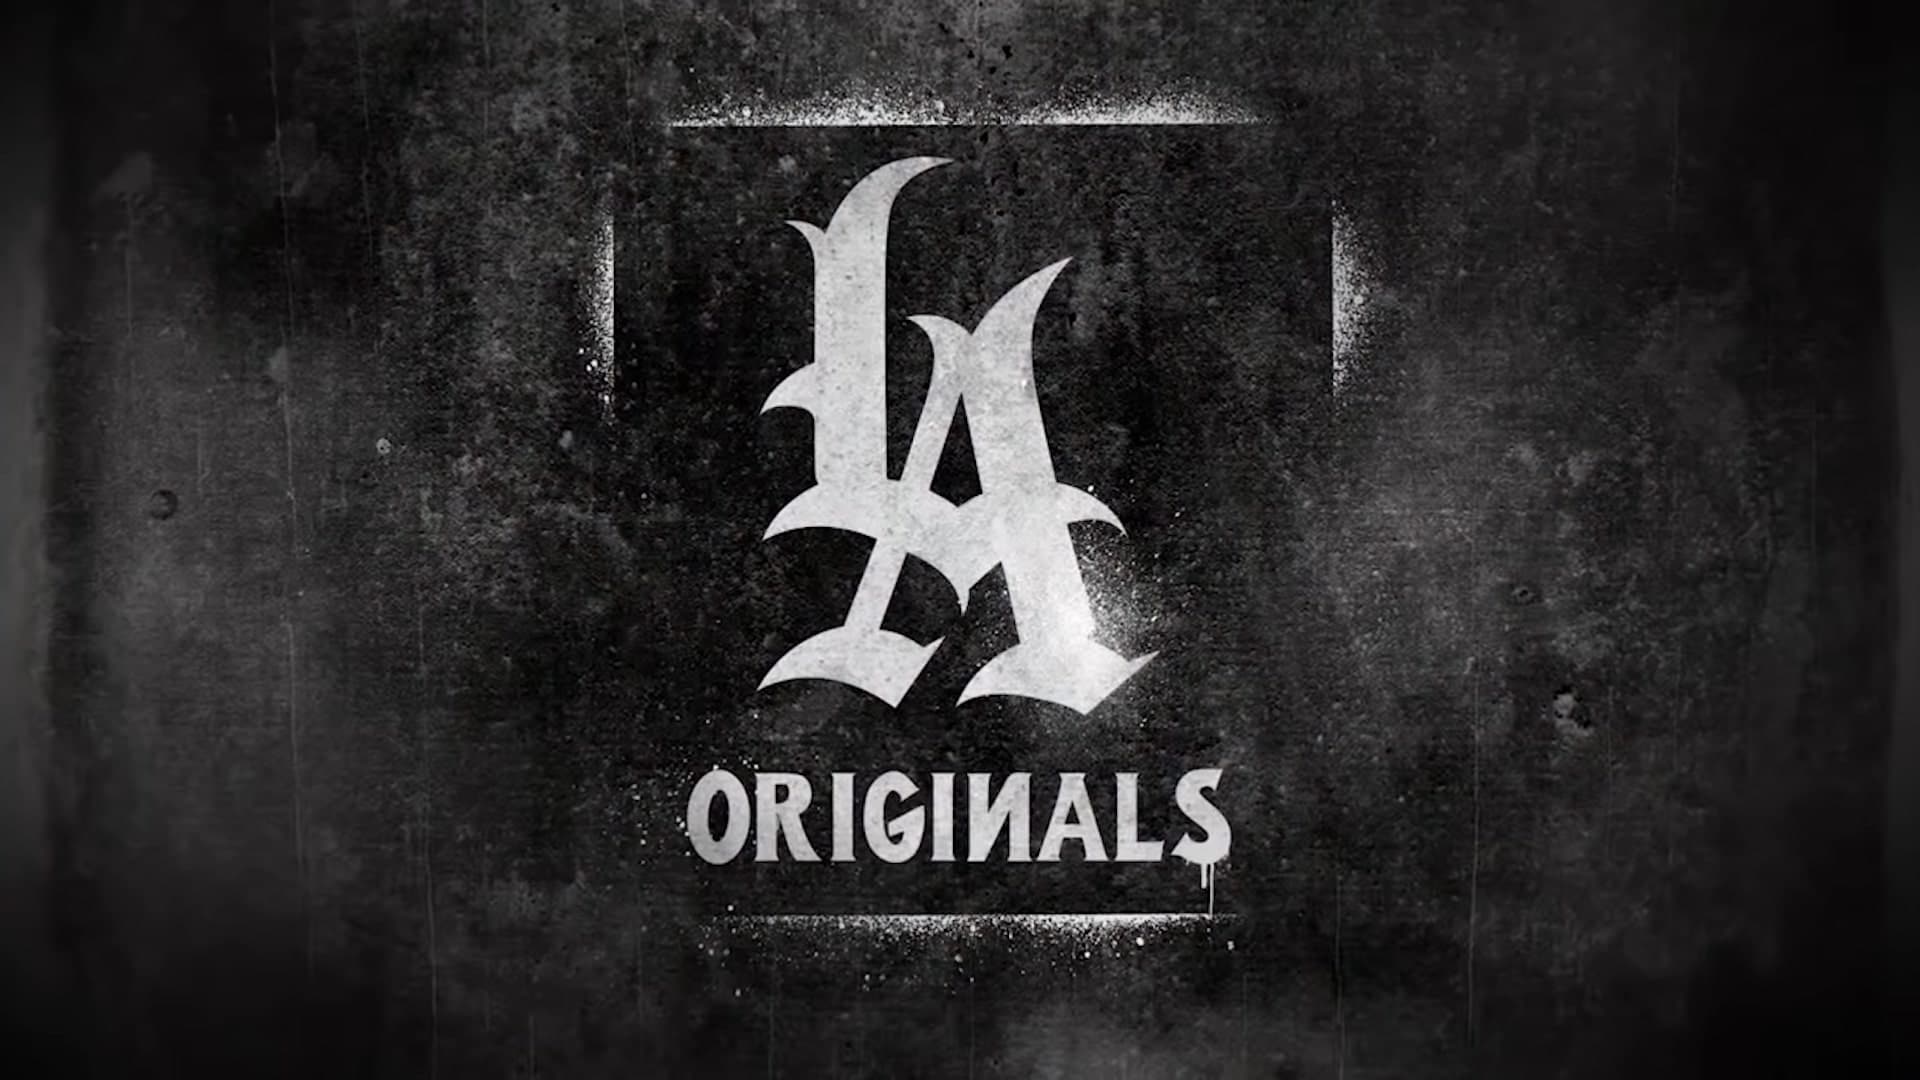 LA Originals Netflix Trailer, Netflix Documentaries, Netflix Chicano Documentary, Coming to Netflix in April 2020